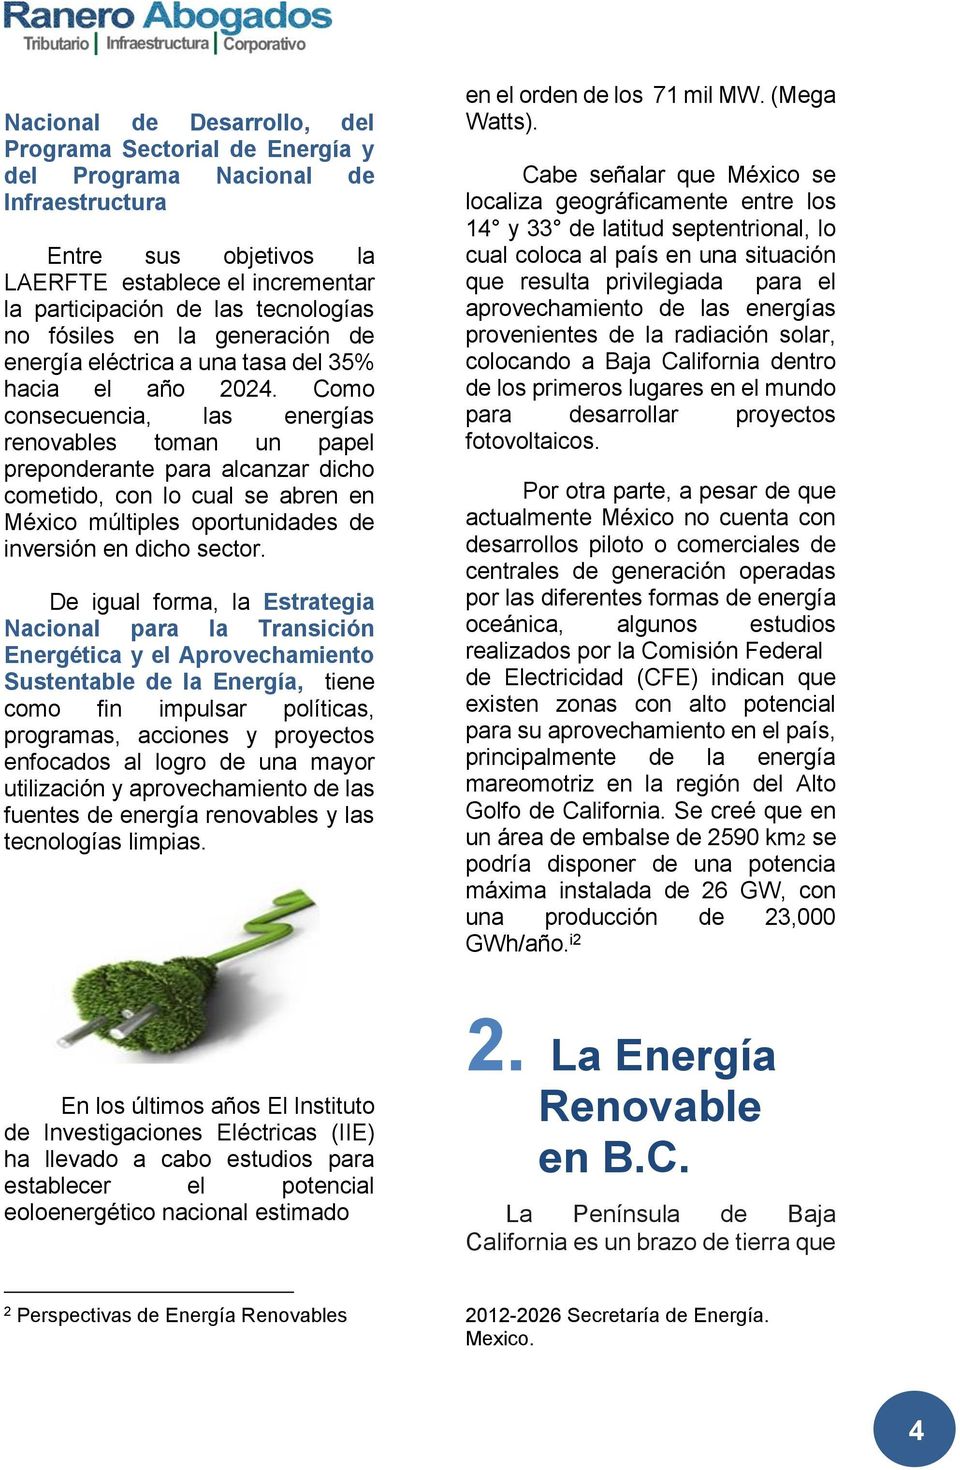 Como consecuencia, las energías renovables toman un papel preponderante para alcanzar dicho cometido, con lo cual se abren en México múltiples oportunidades de inversión en dicho sector.